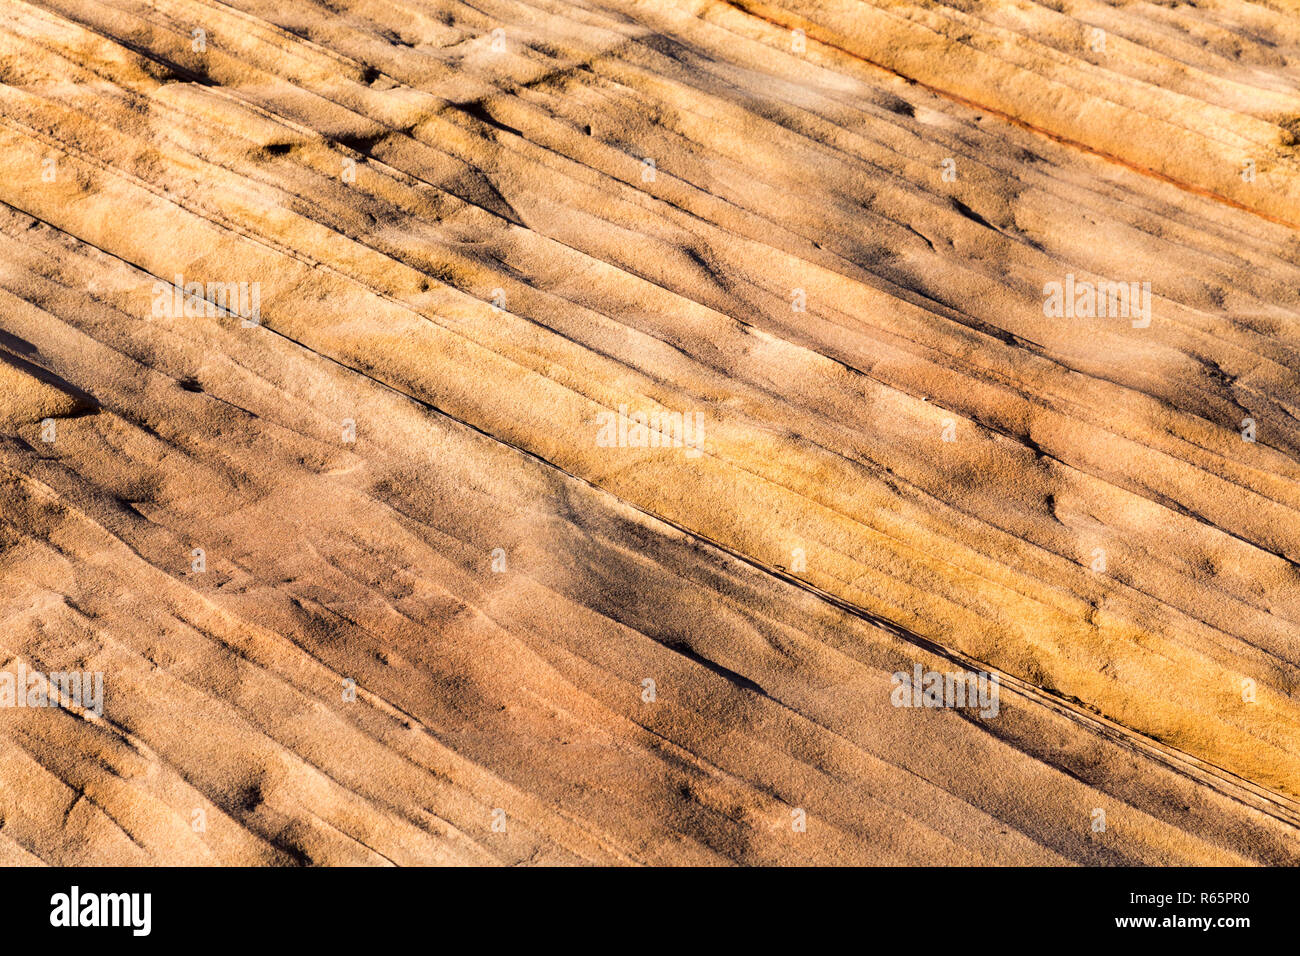 Rock surface près de page en Arizona pourrait être "ripple marks". Ils sont formés par l'eau peu profonde s'écoulant sur un lit de sable ou d'autres sédiments, ou par le vent-dri Banque D'Images